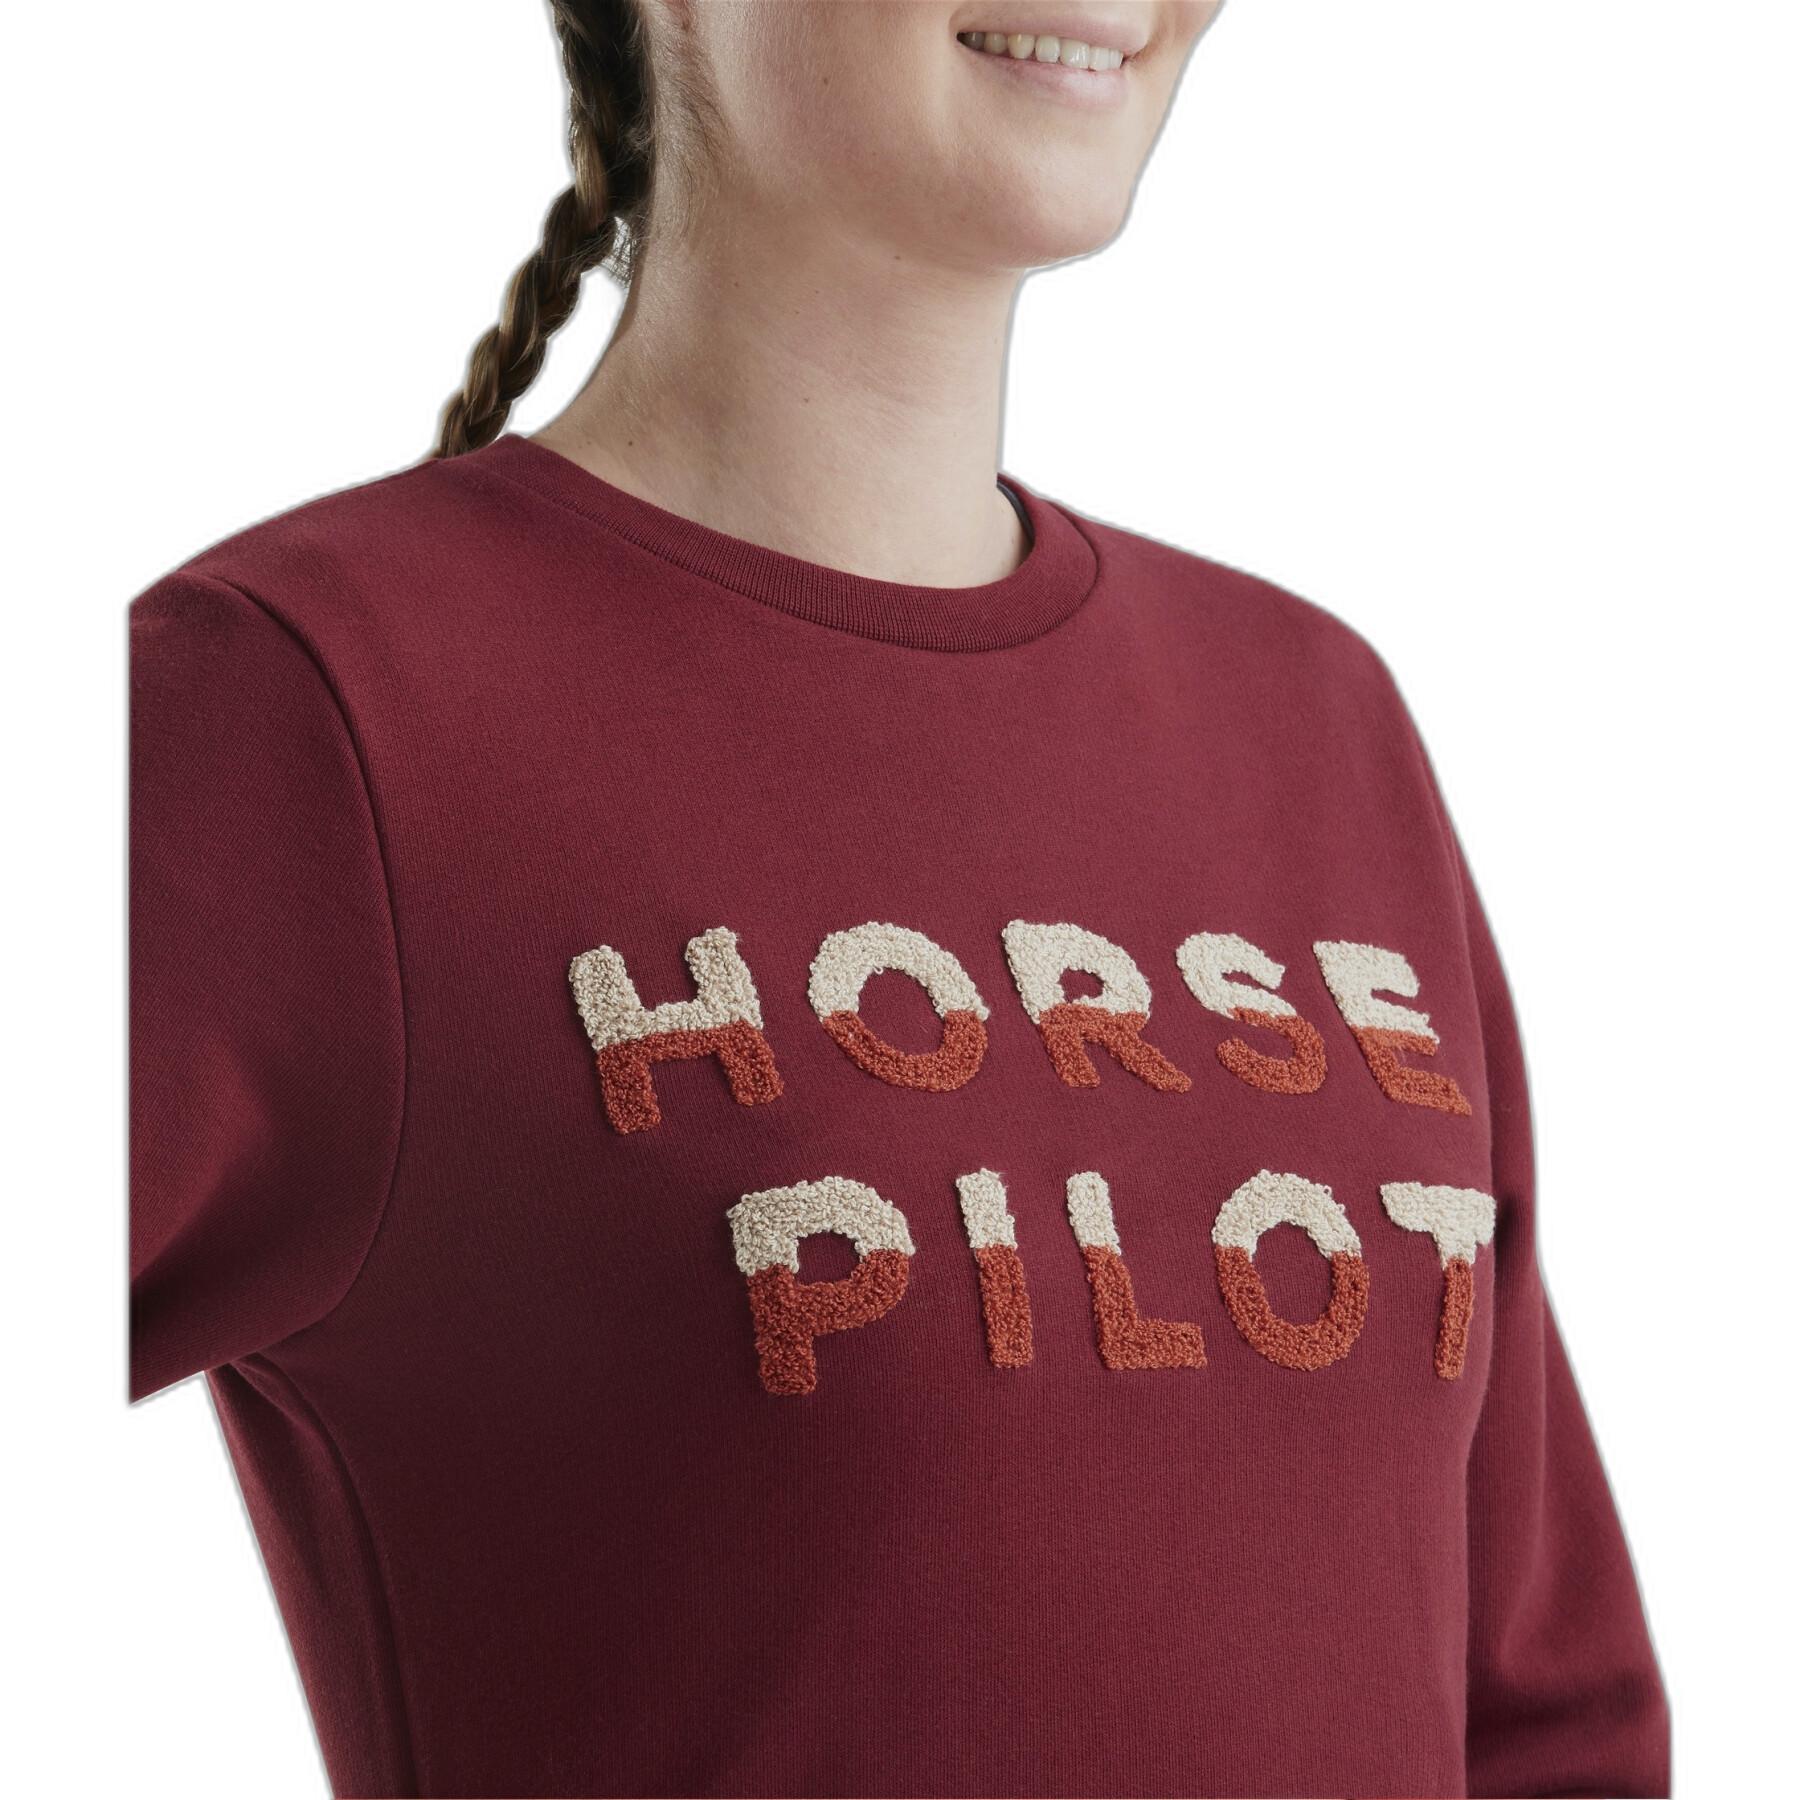 Sweatshirt reiten Frau Horse Pilot Team